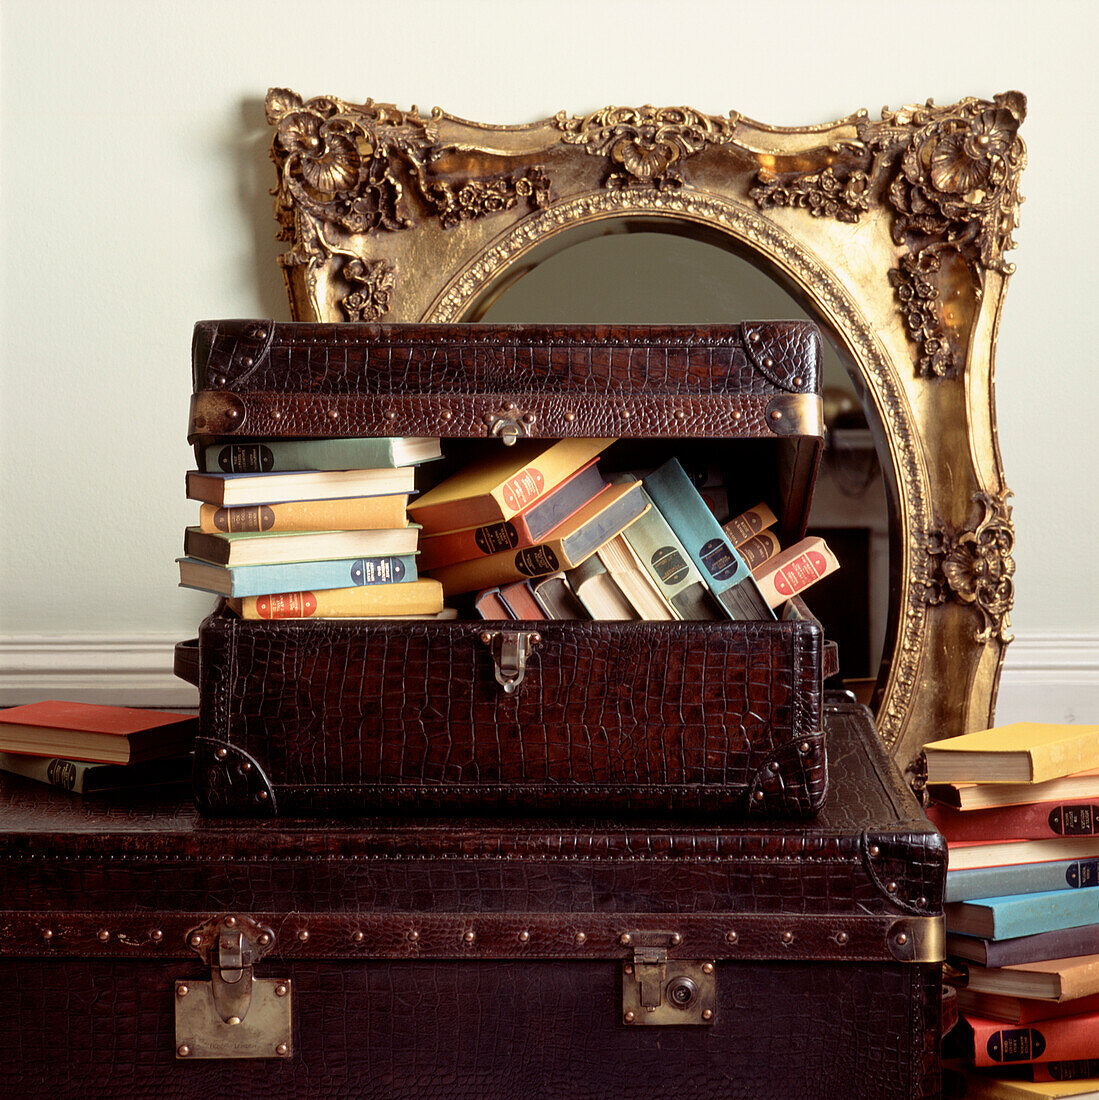 Koffer aus Krokodilleder mit alten Büchern und einem vergoldeten Spiegel im Rokoko-Stil im Hintergrund